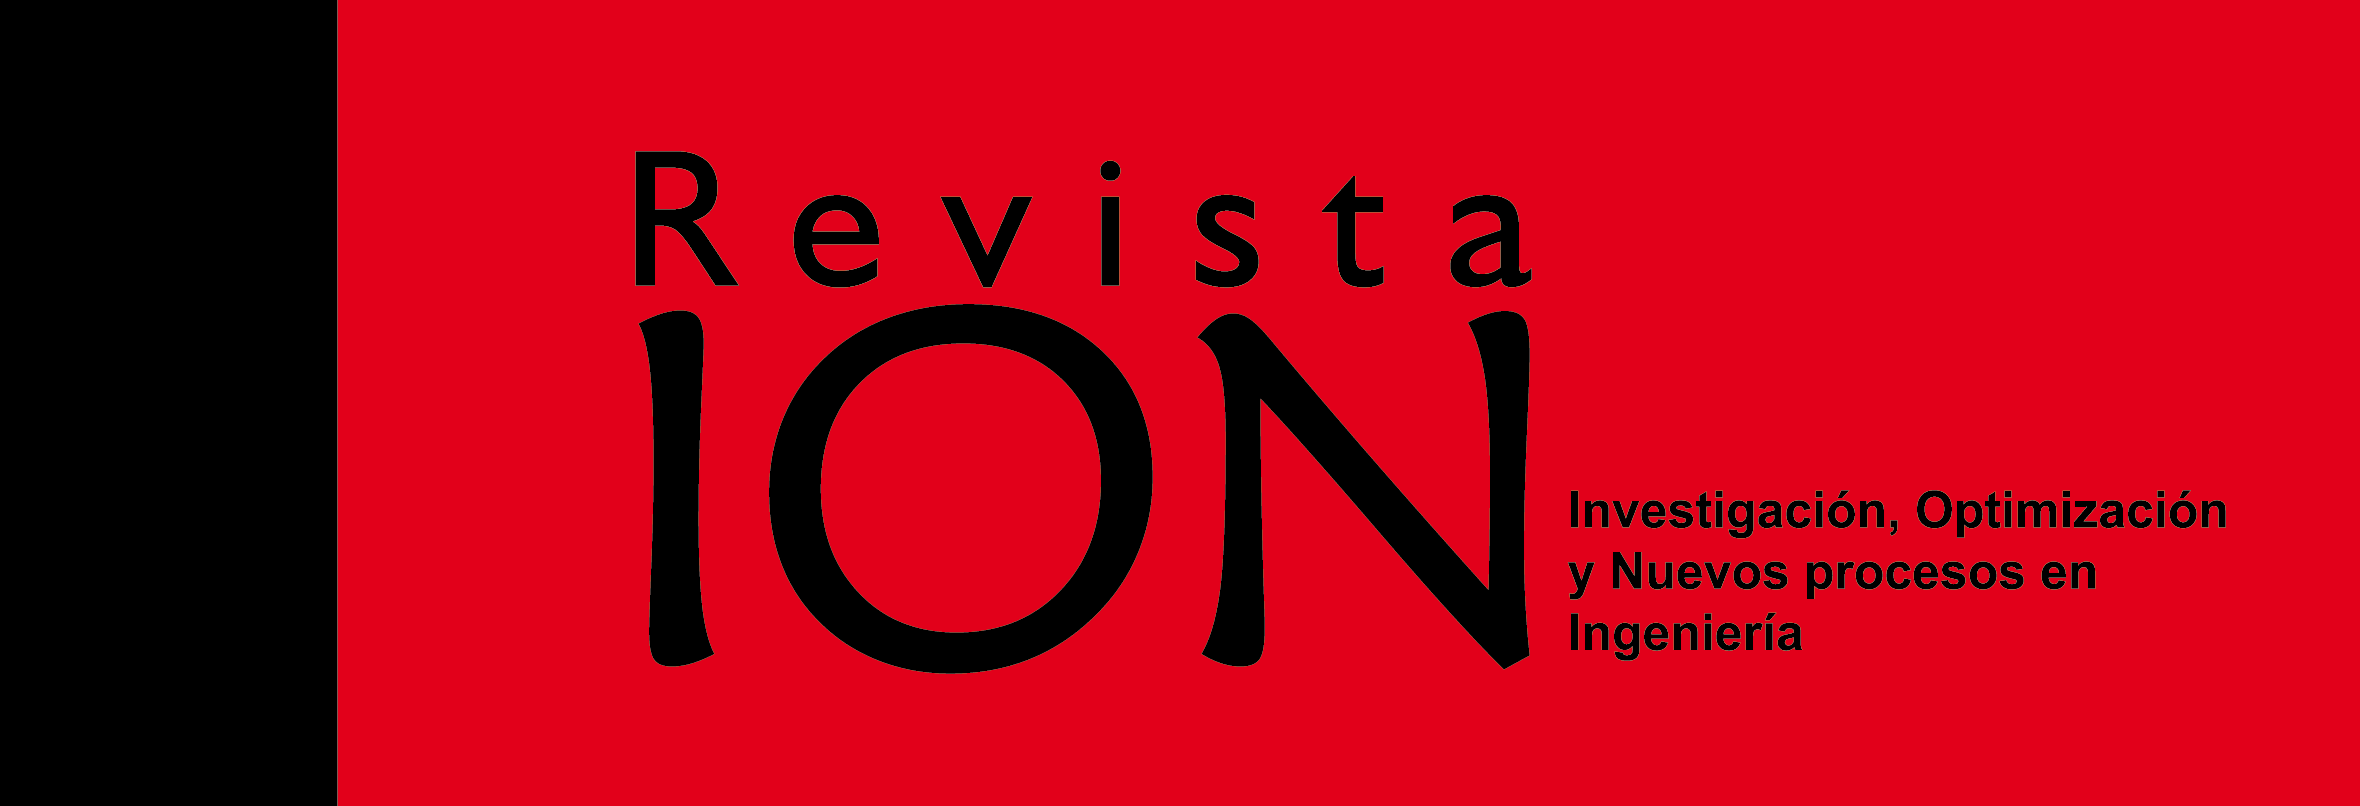 logo_revista_ion.png